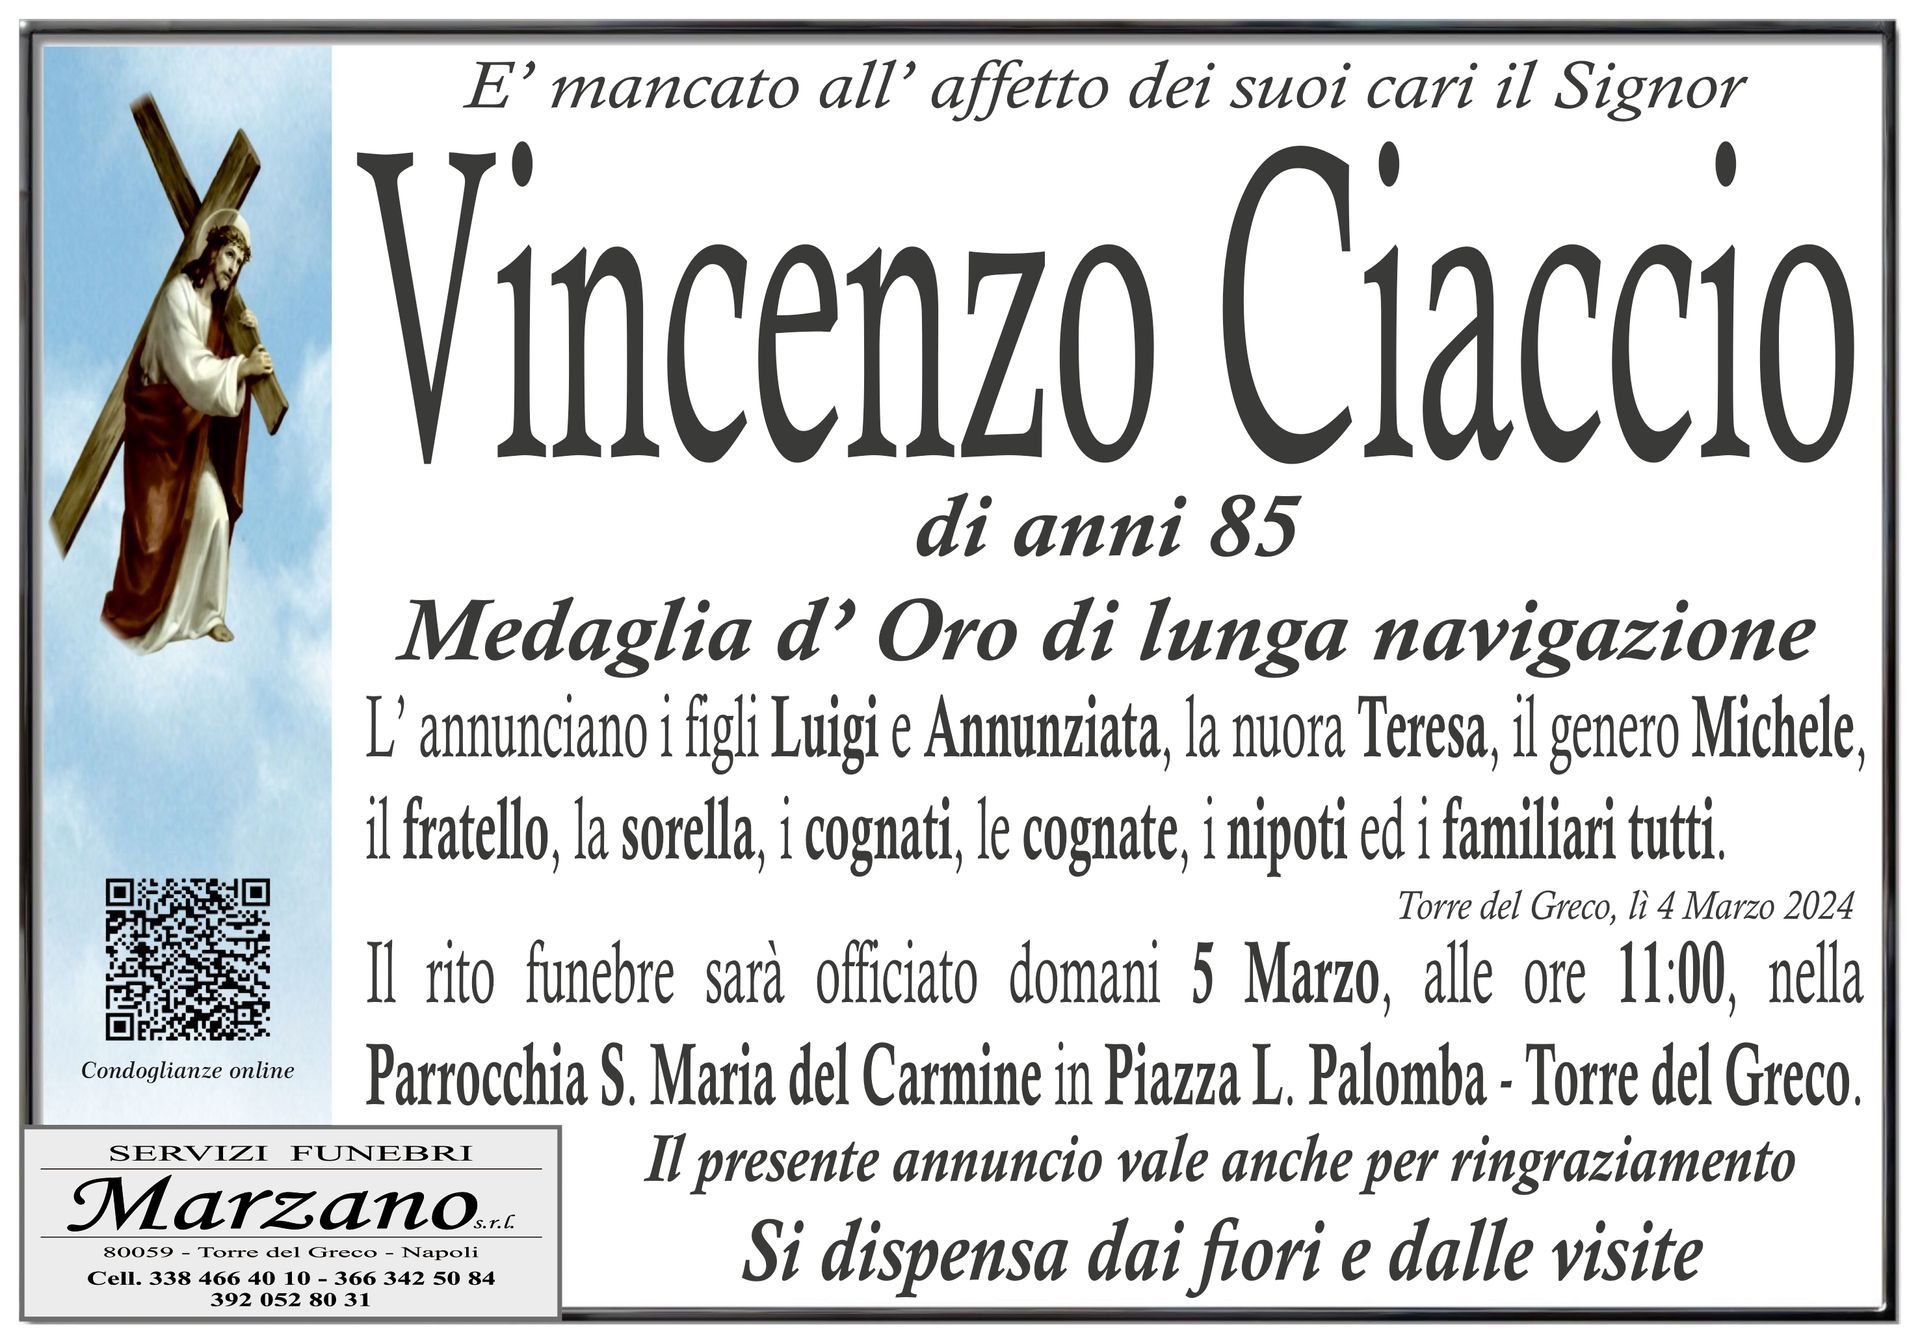 Vincenzo Ciaccio